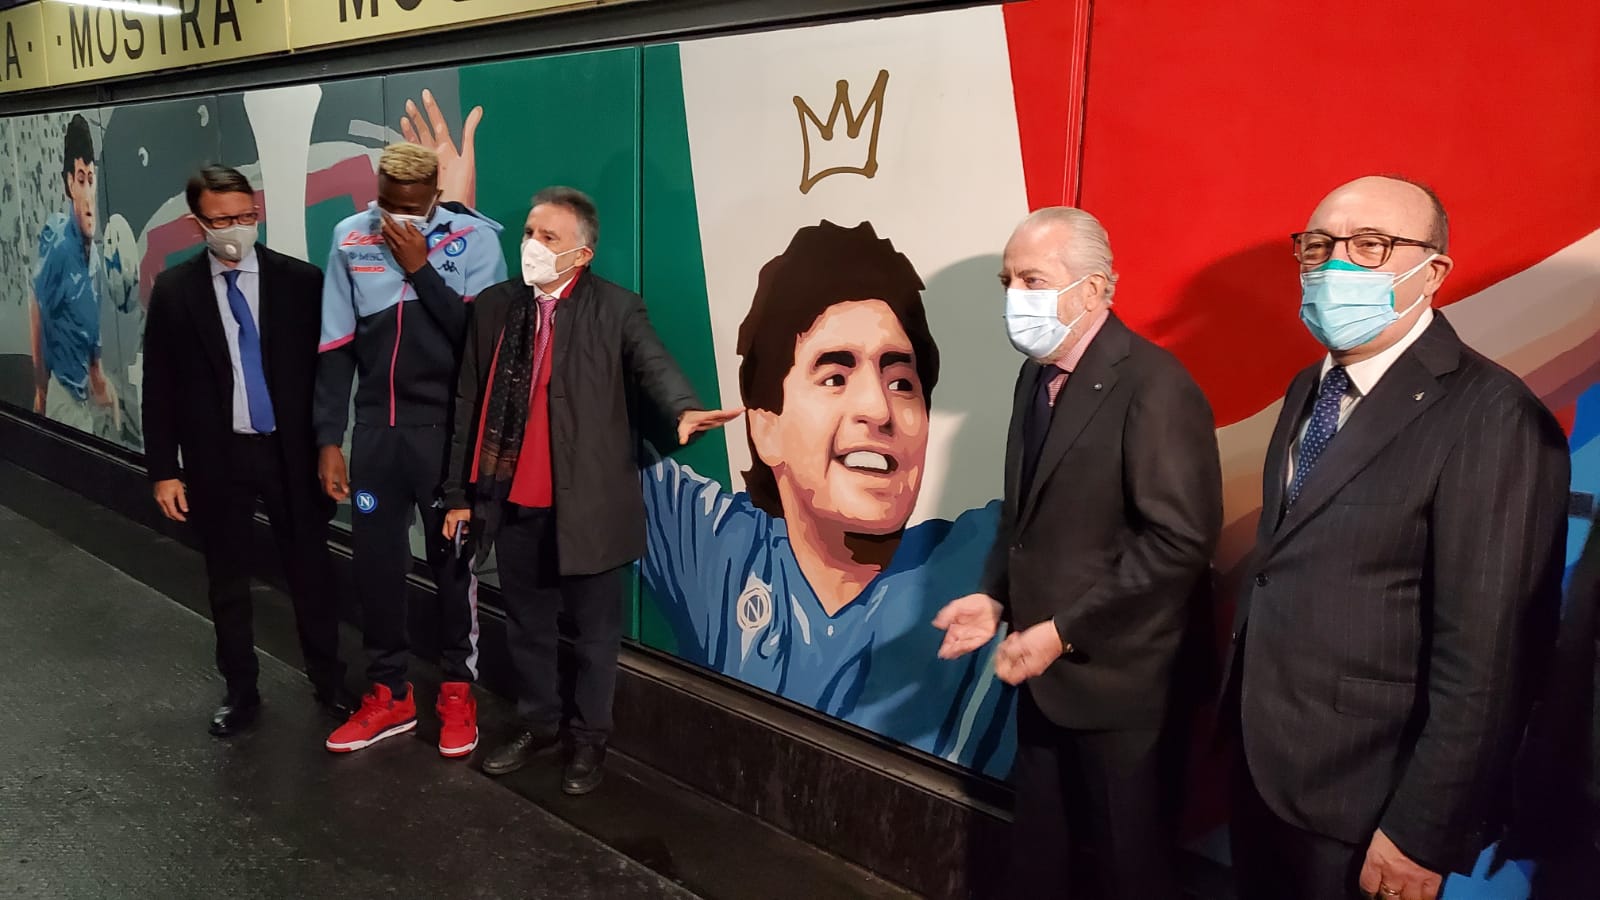 La Camera di Commercio sostiene la mostra per la storia del Napoli nella stazione "Mostra-Maradona" della Cumana